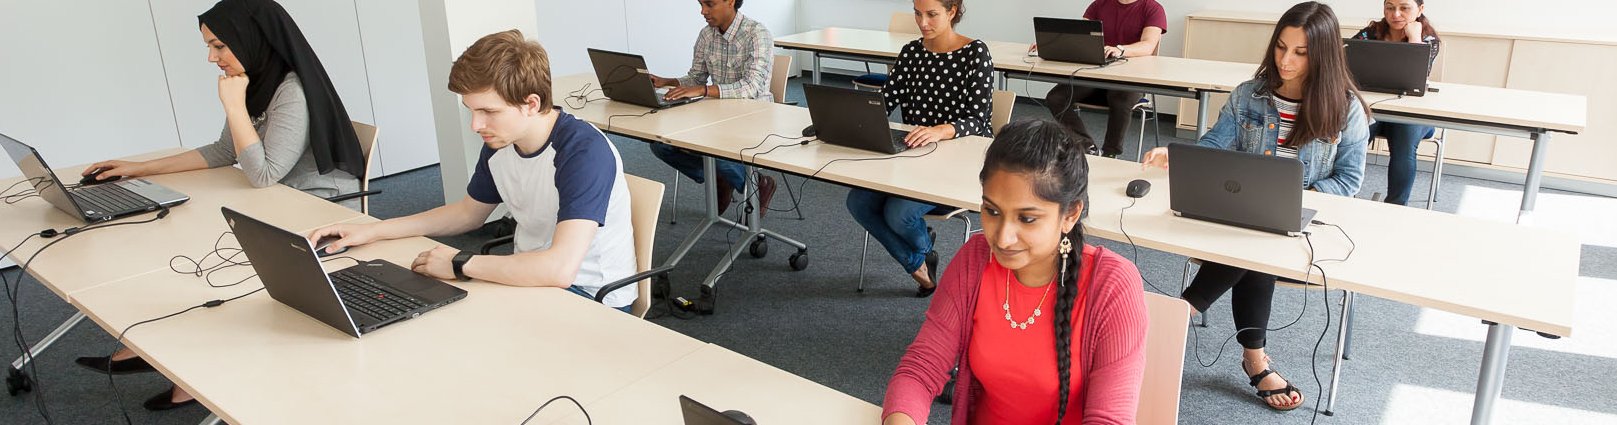 In einem Prüfungsraum legt eine Gruppe internationaler Studierender den C-Test an Laptops ab.  